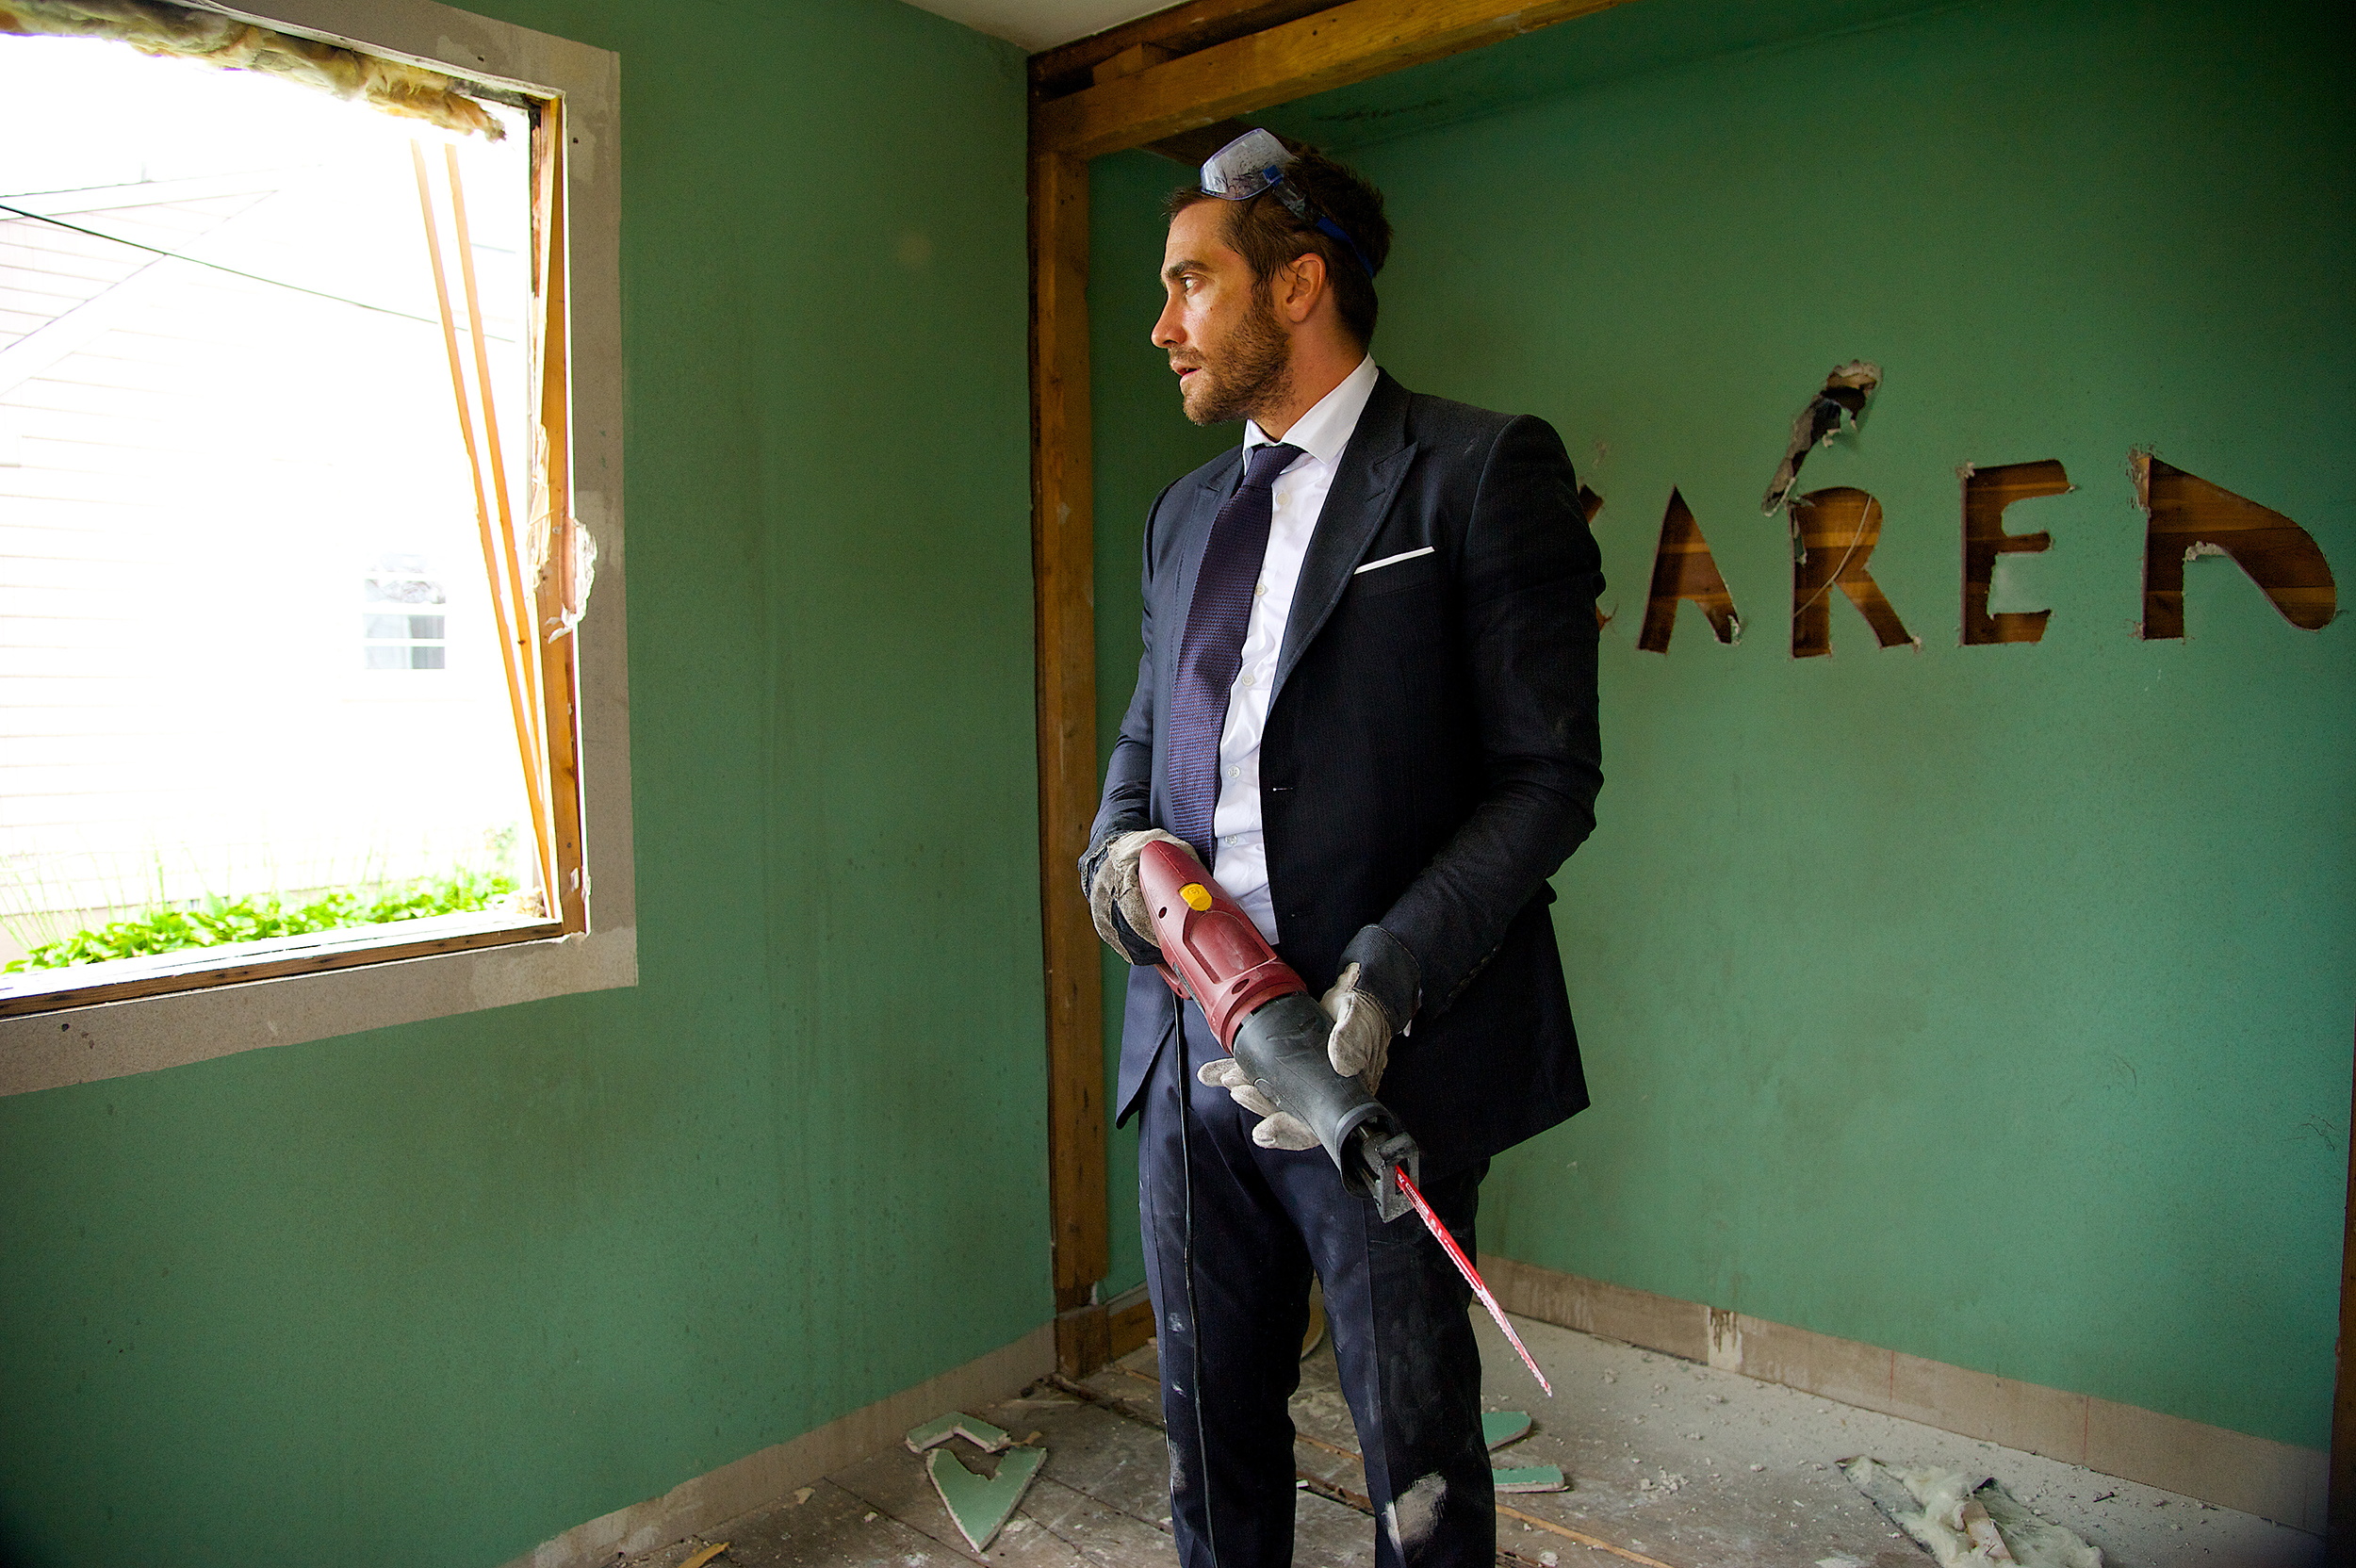 Jake Gyllenhaal in “Demolition.” (Fox Searchlight)